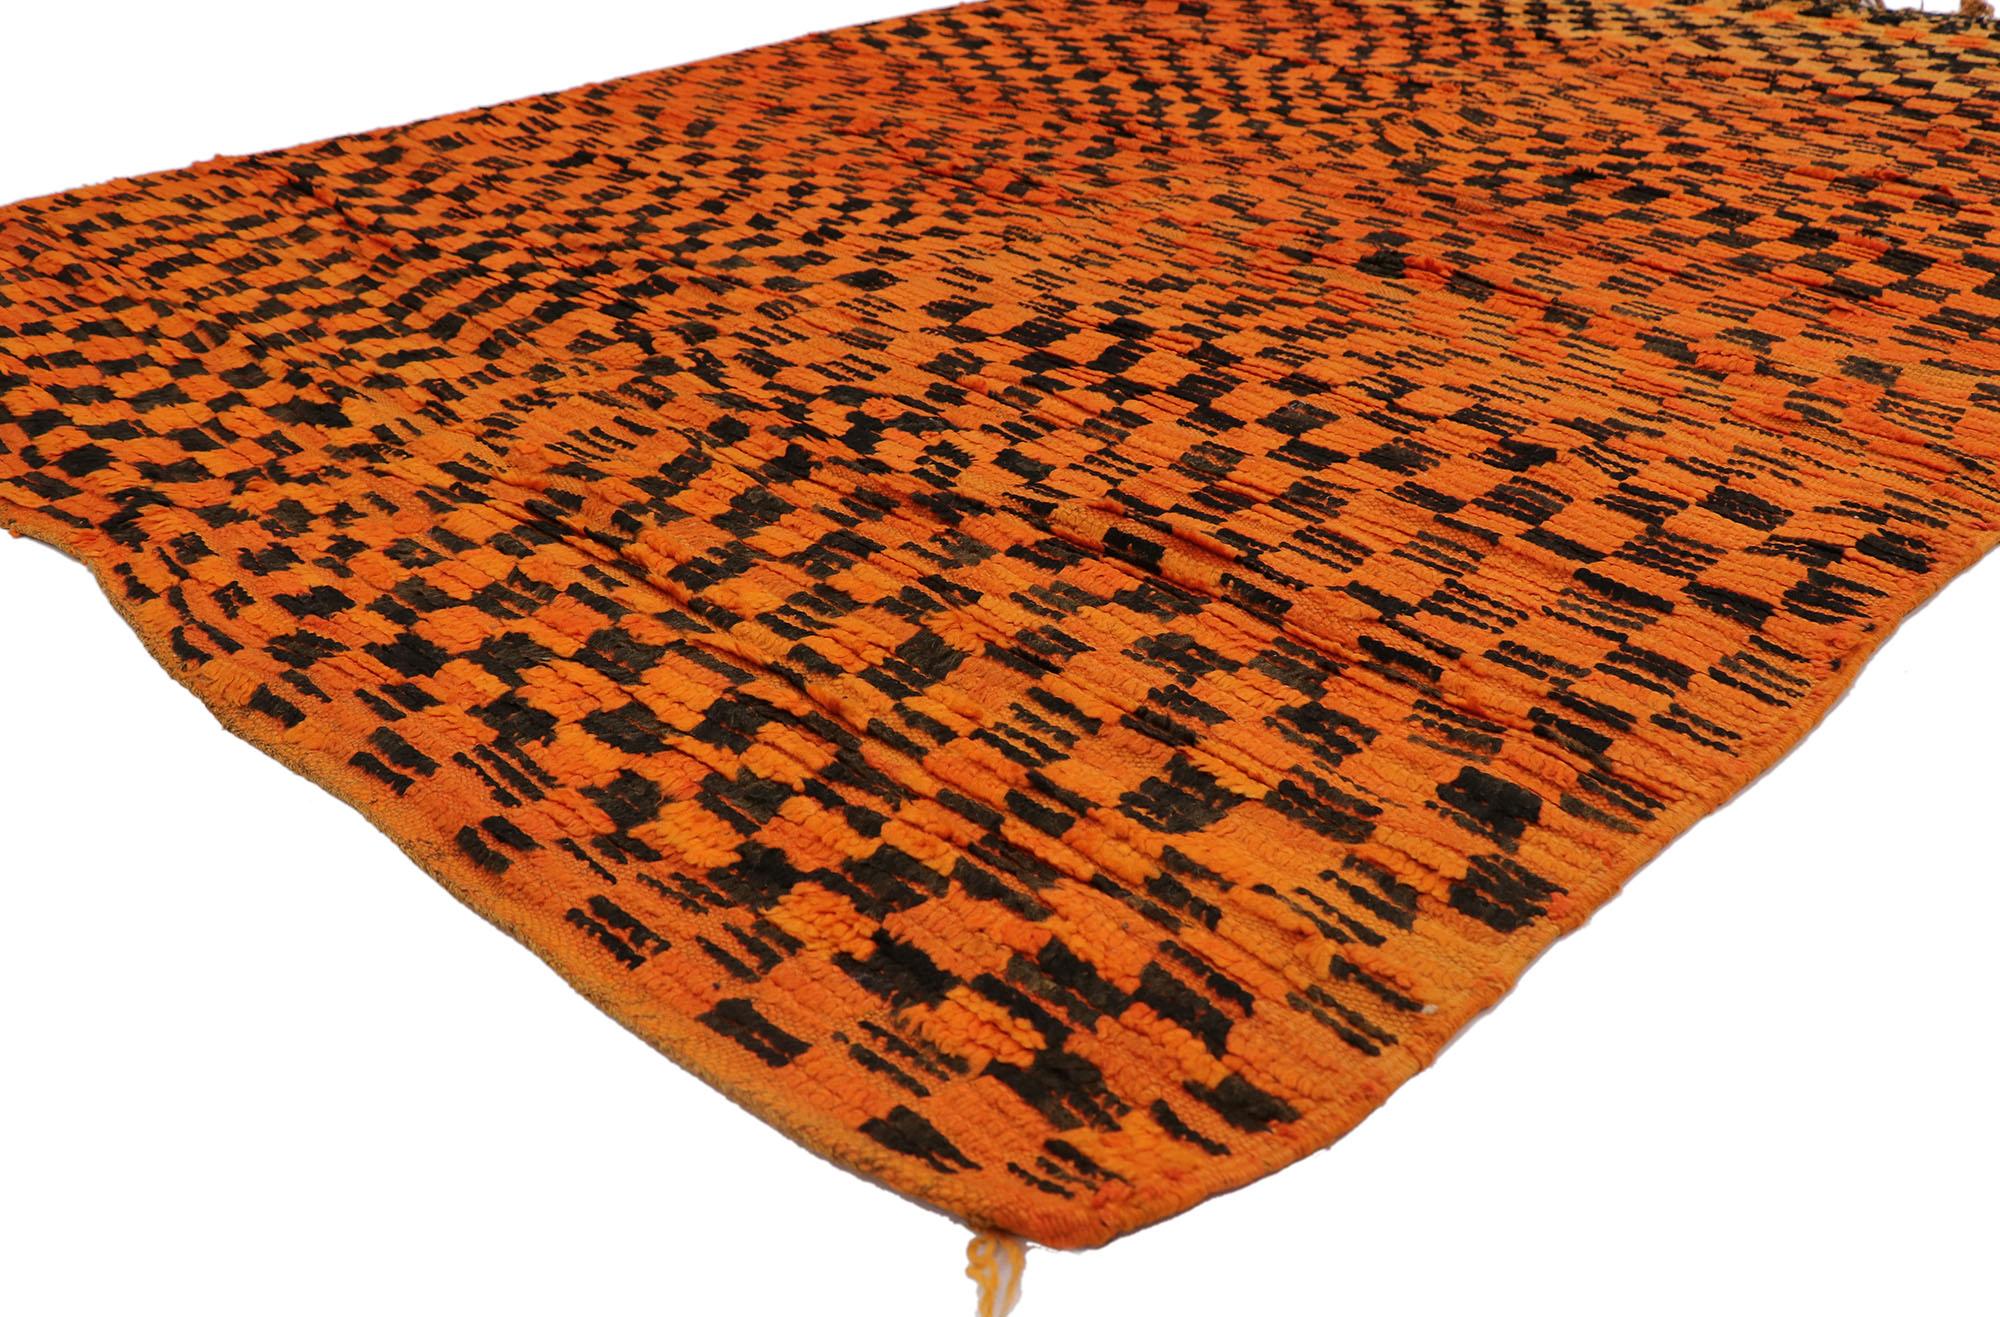 21319 Marokkanischer Vintage-Teppich, 06'00 x 08'05.
Nomadischer Charme trifft auf raue Schönheit in diesem handgeknüpften marokkanischen Berberteppich aus Wolle. Das eigentliche Karomuster und die lebendigen Farben, die in dieses Stück eingewebt